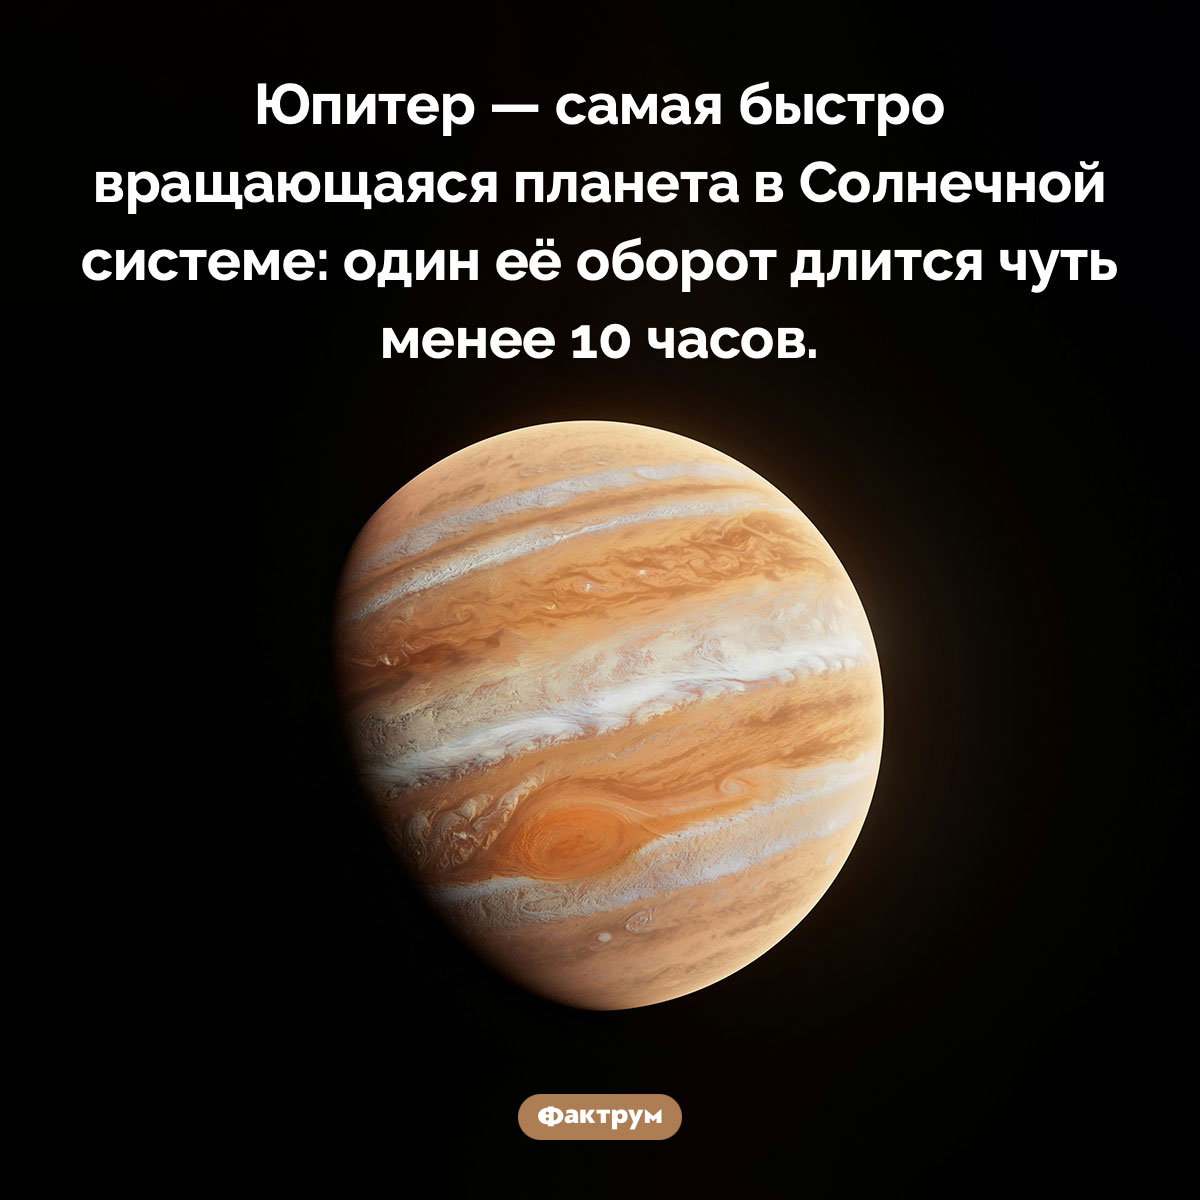 Самая быстро вращающаяся планета. Юпитер — самая быстро вращающаяся планета в Солнечной системе: один её оборот длится чуть менее 10 часов.